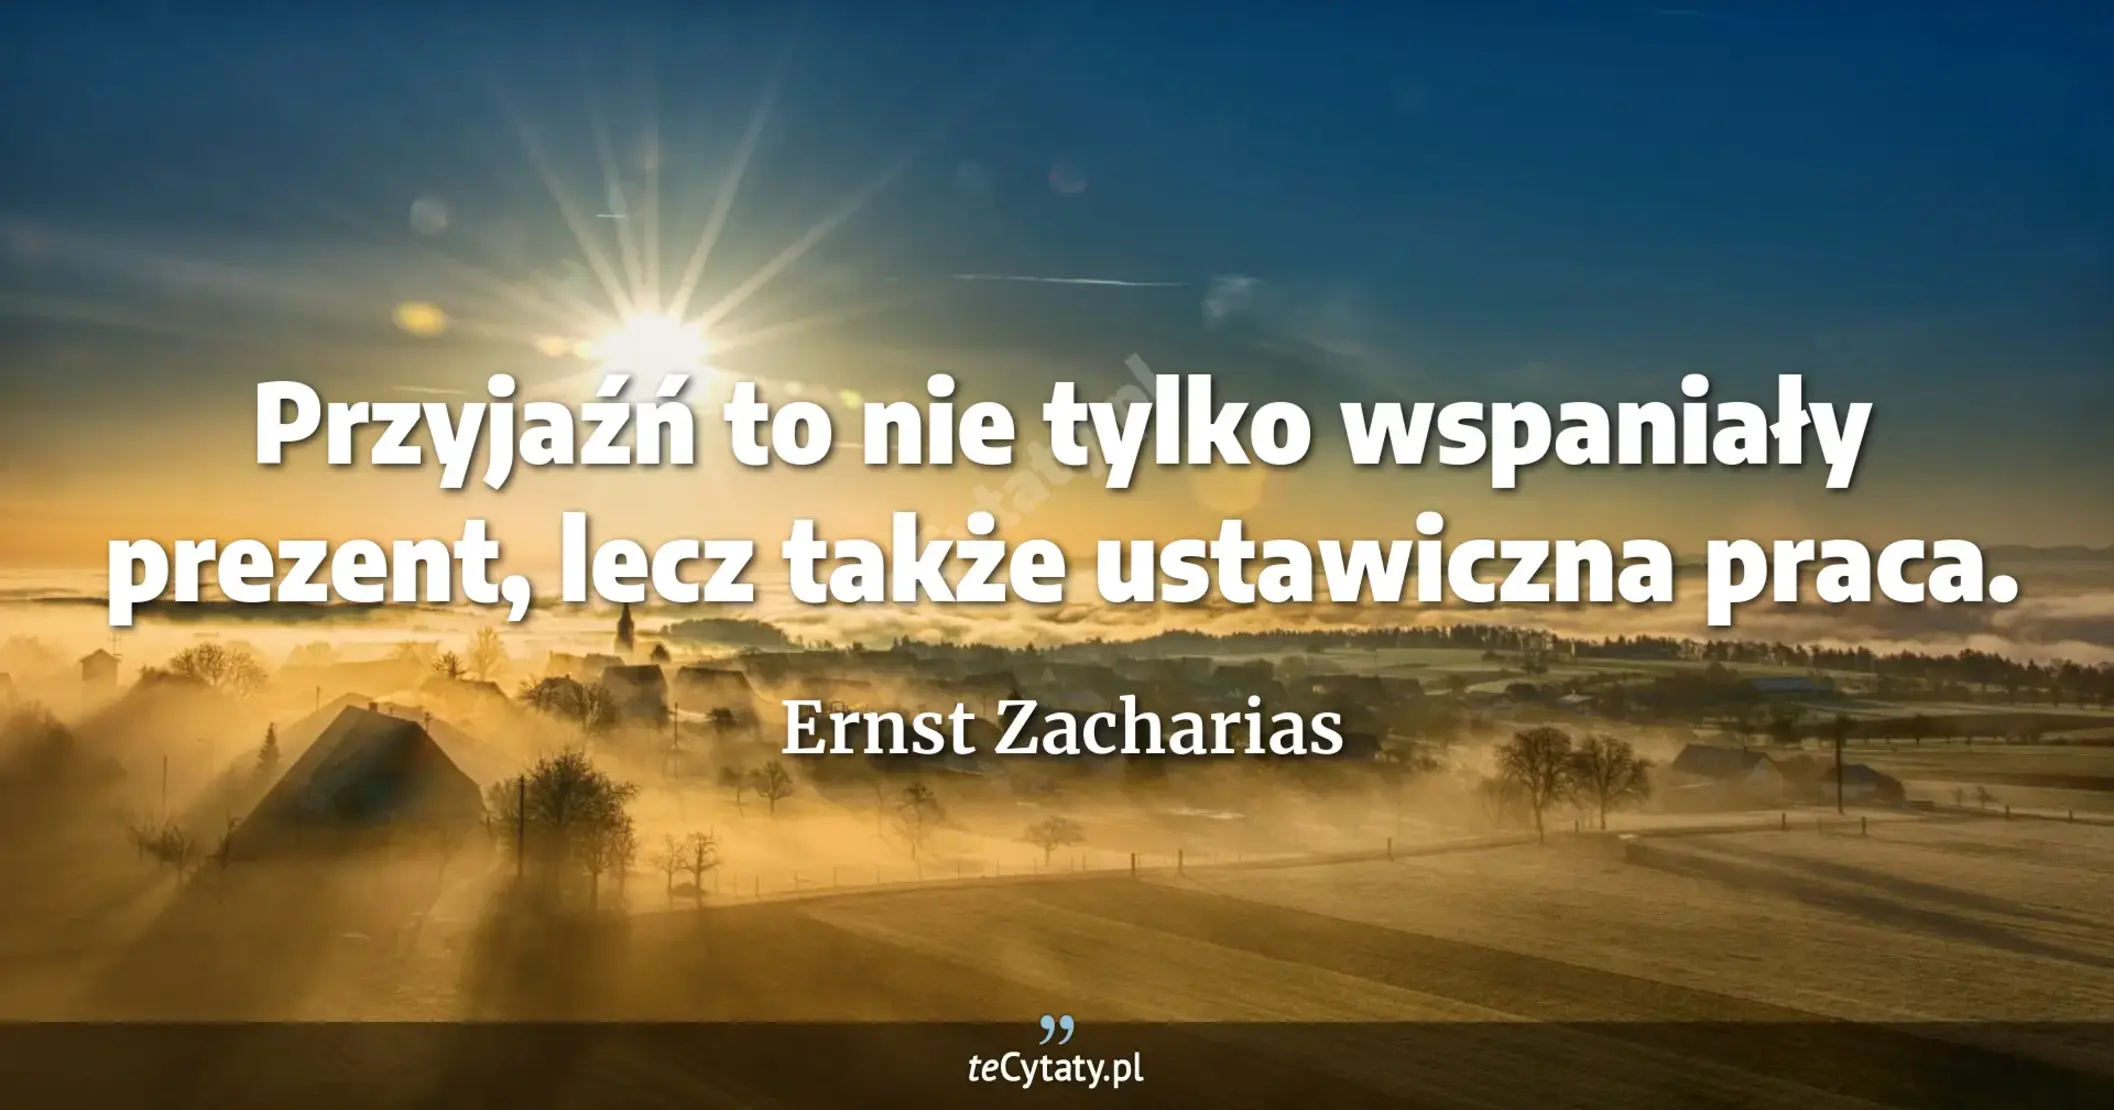 Przyjaźń to nie tylko wspaniały prezent, lecz także ustawiczna praca. - Ernst Zacharias